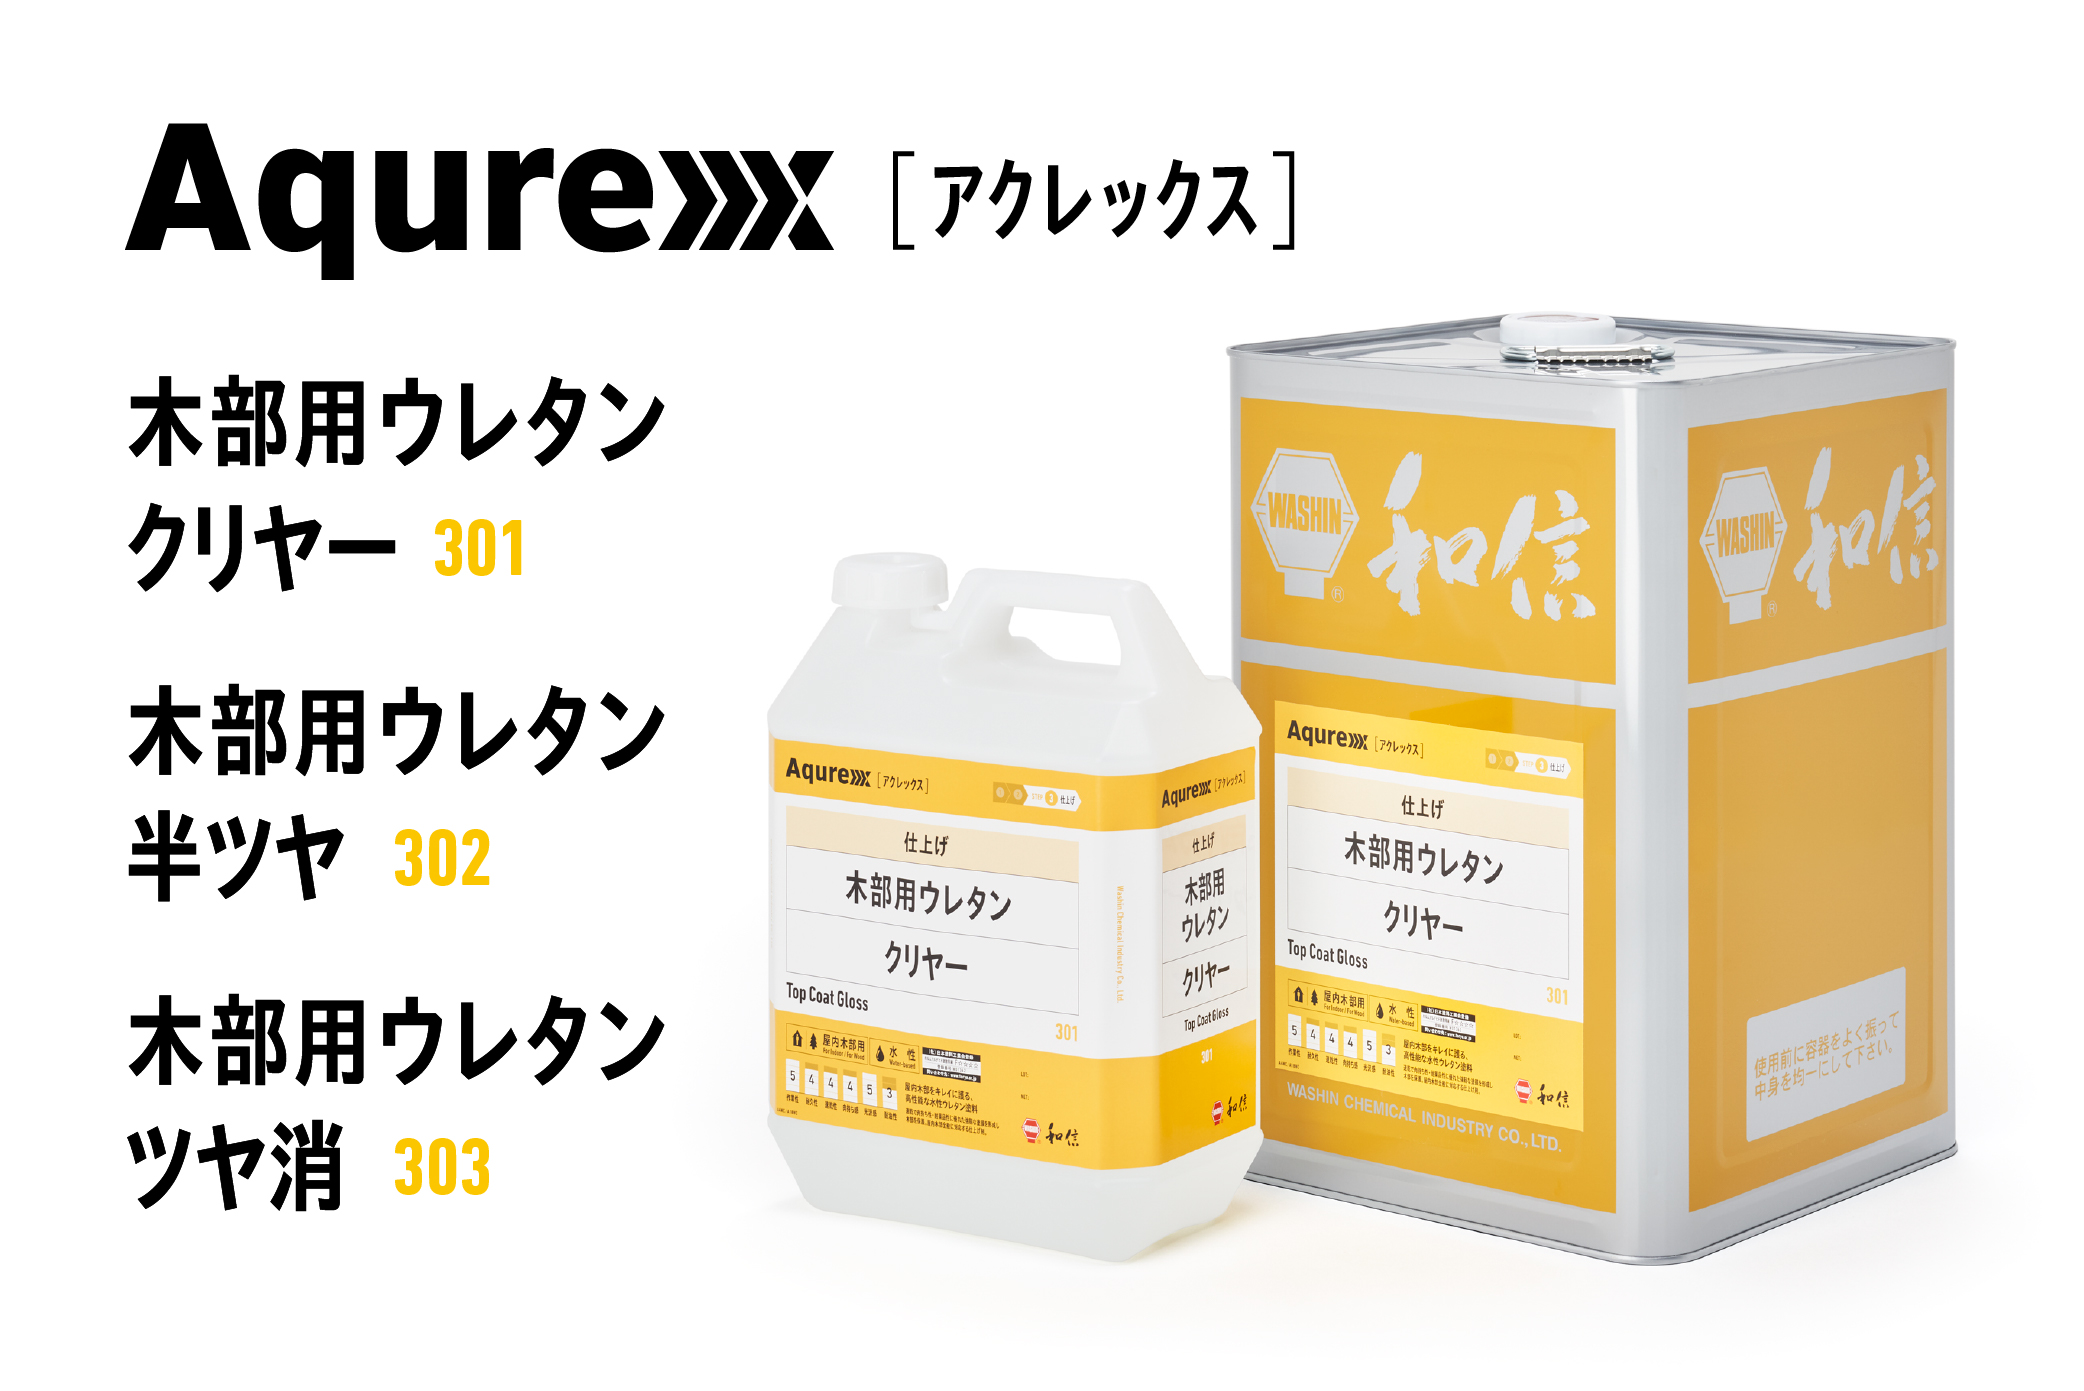 小物などお買い得な福袋 和信化学工業 Aqurex(アクレックス) 木部用ウレタン ツヤ消 (14kg)